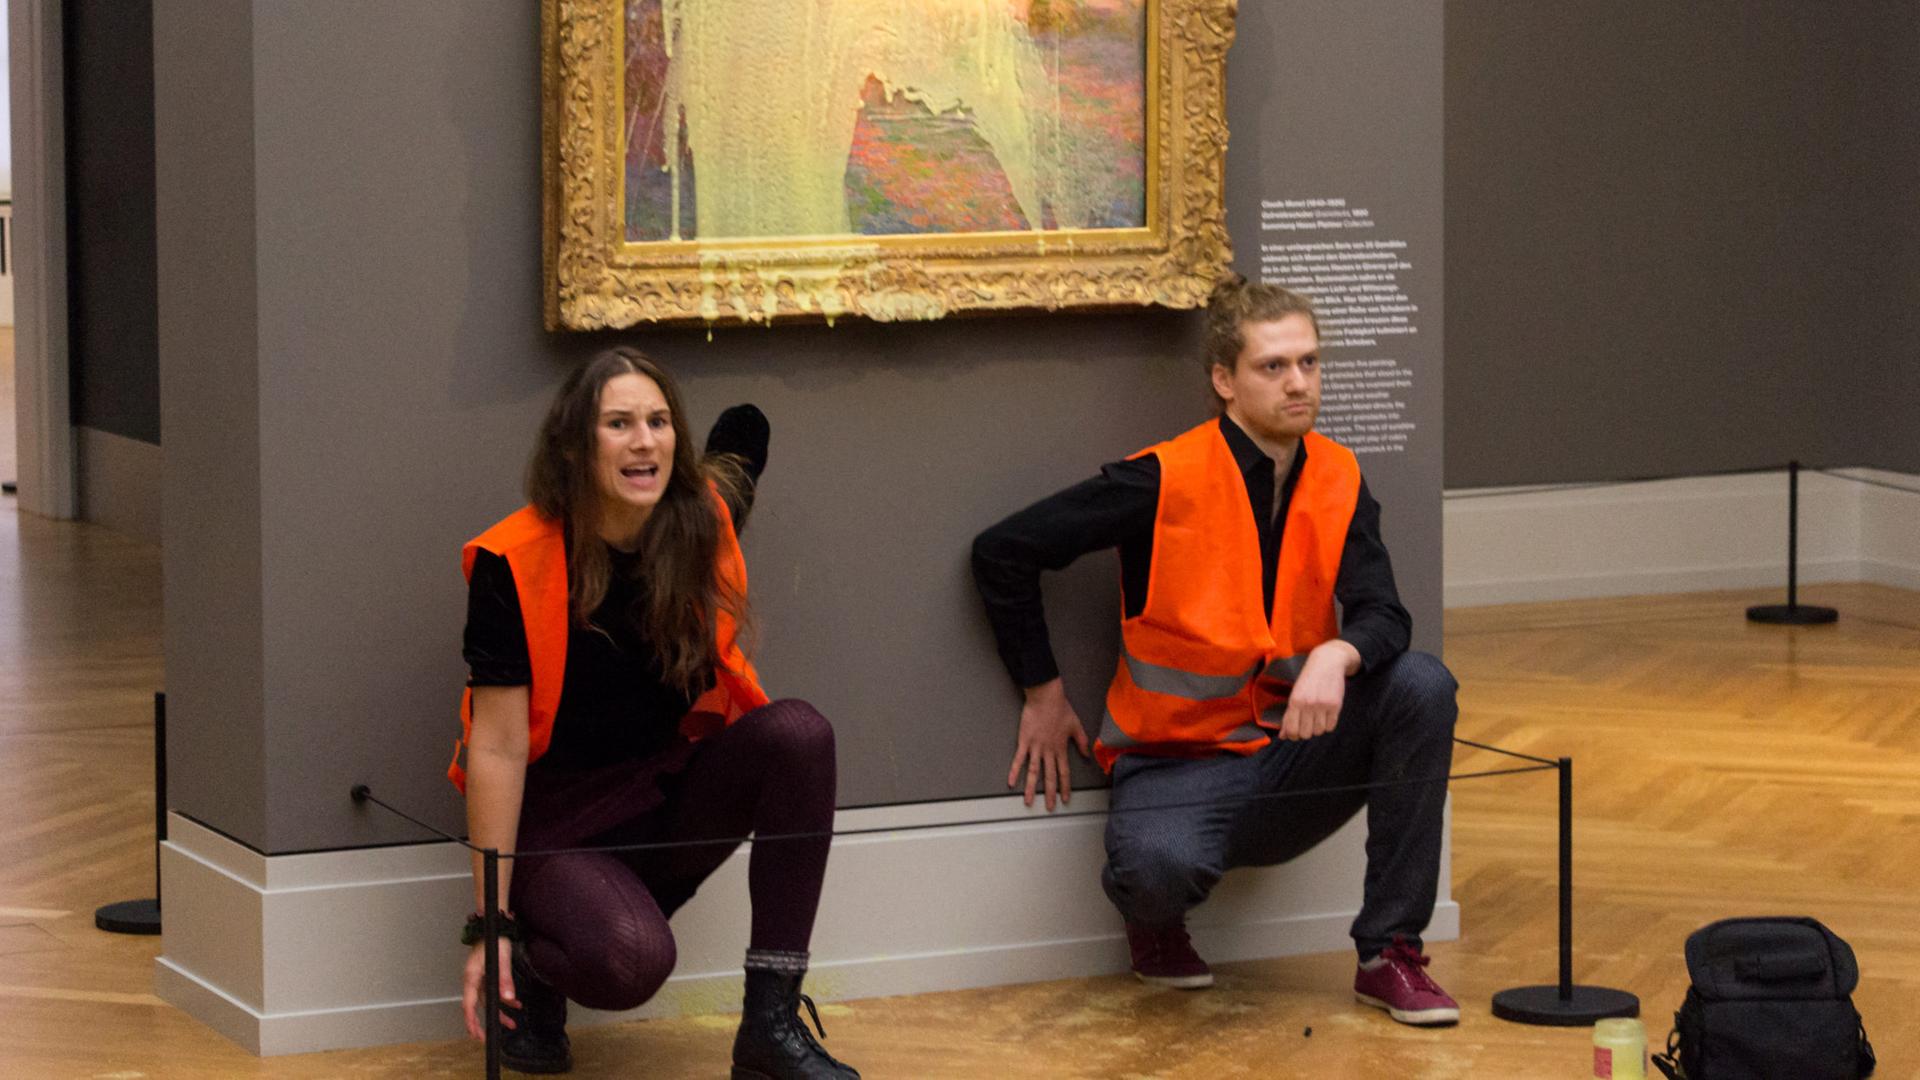 Klimaaktivisten haben sich unter dem Monet-Gemälde, das sie mit Kartoffelbrei beworfen haben, festgeklebt.